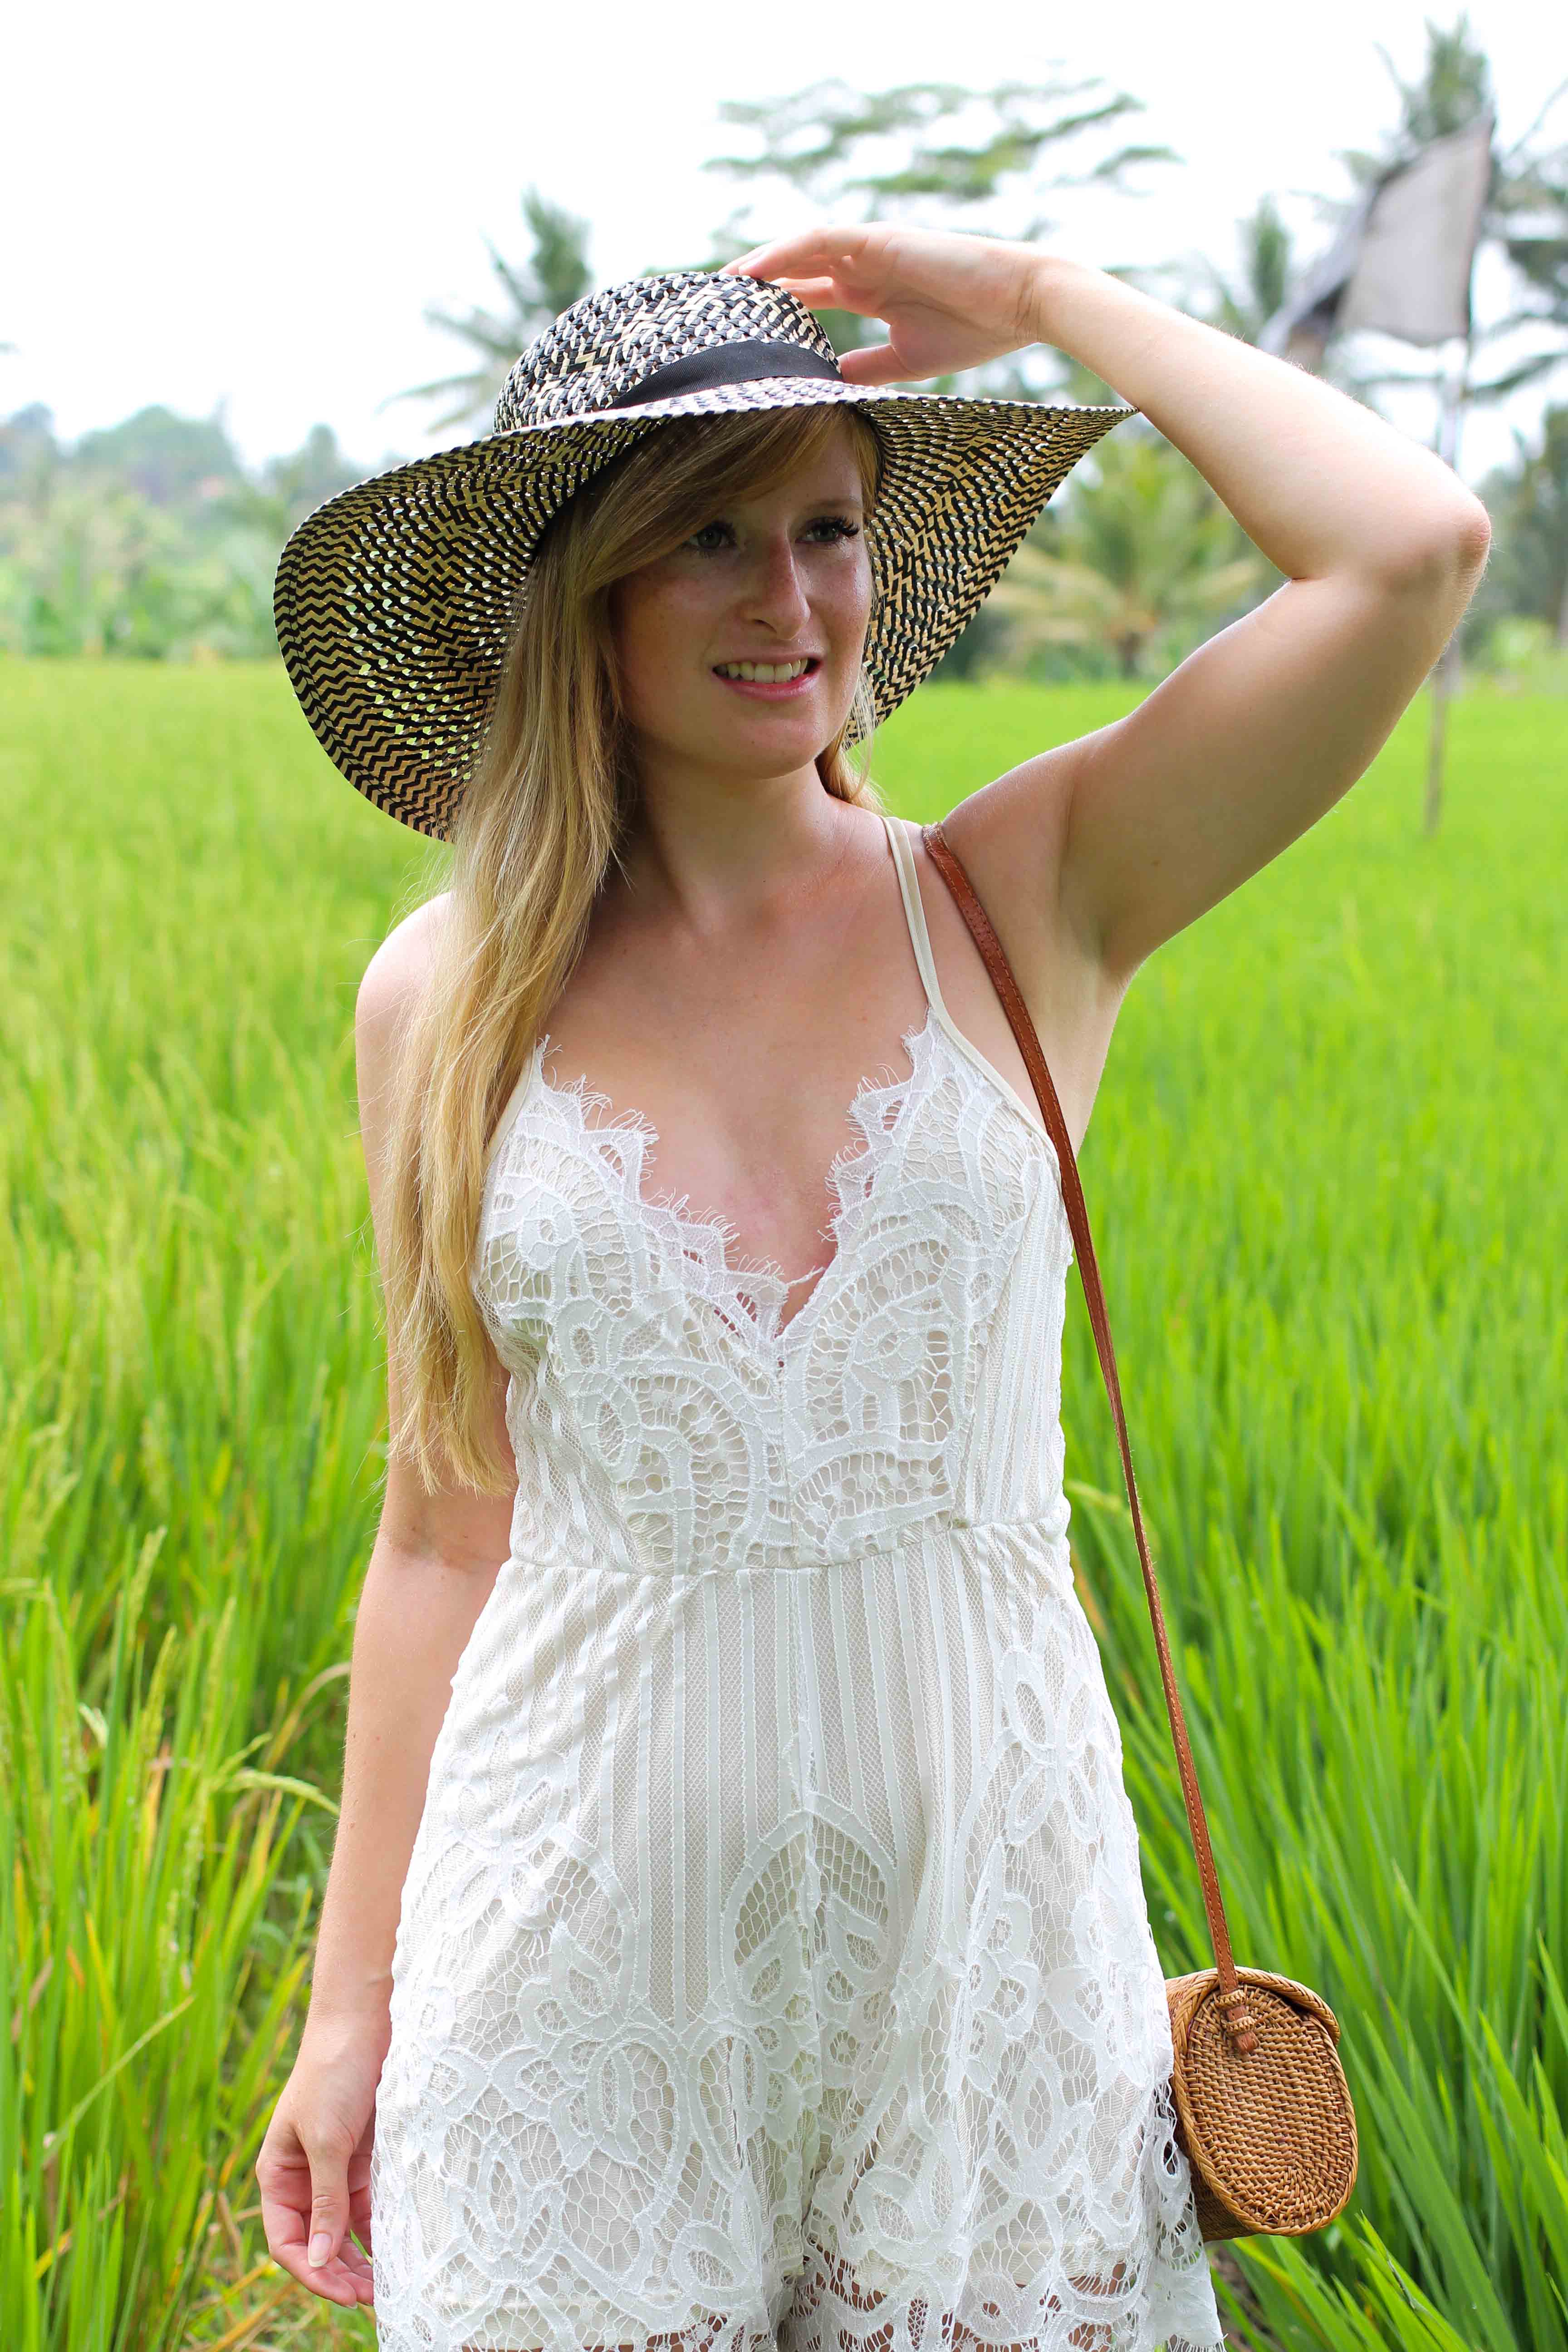 Weißer Jumpsuit kombinieren Spitze strohhut Reisfeldern Ubud Sommeroutfit Bali Modeblog Outfit